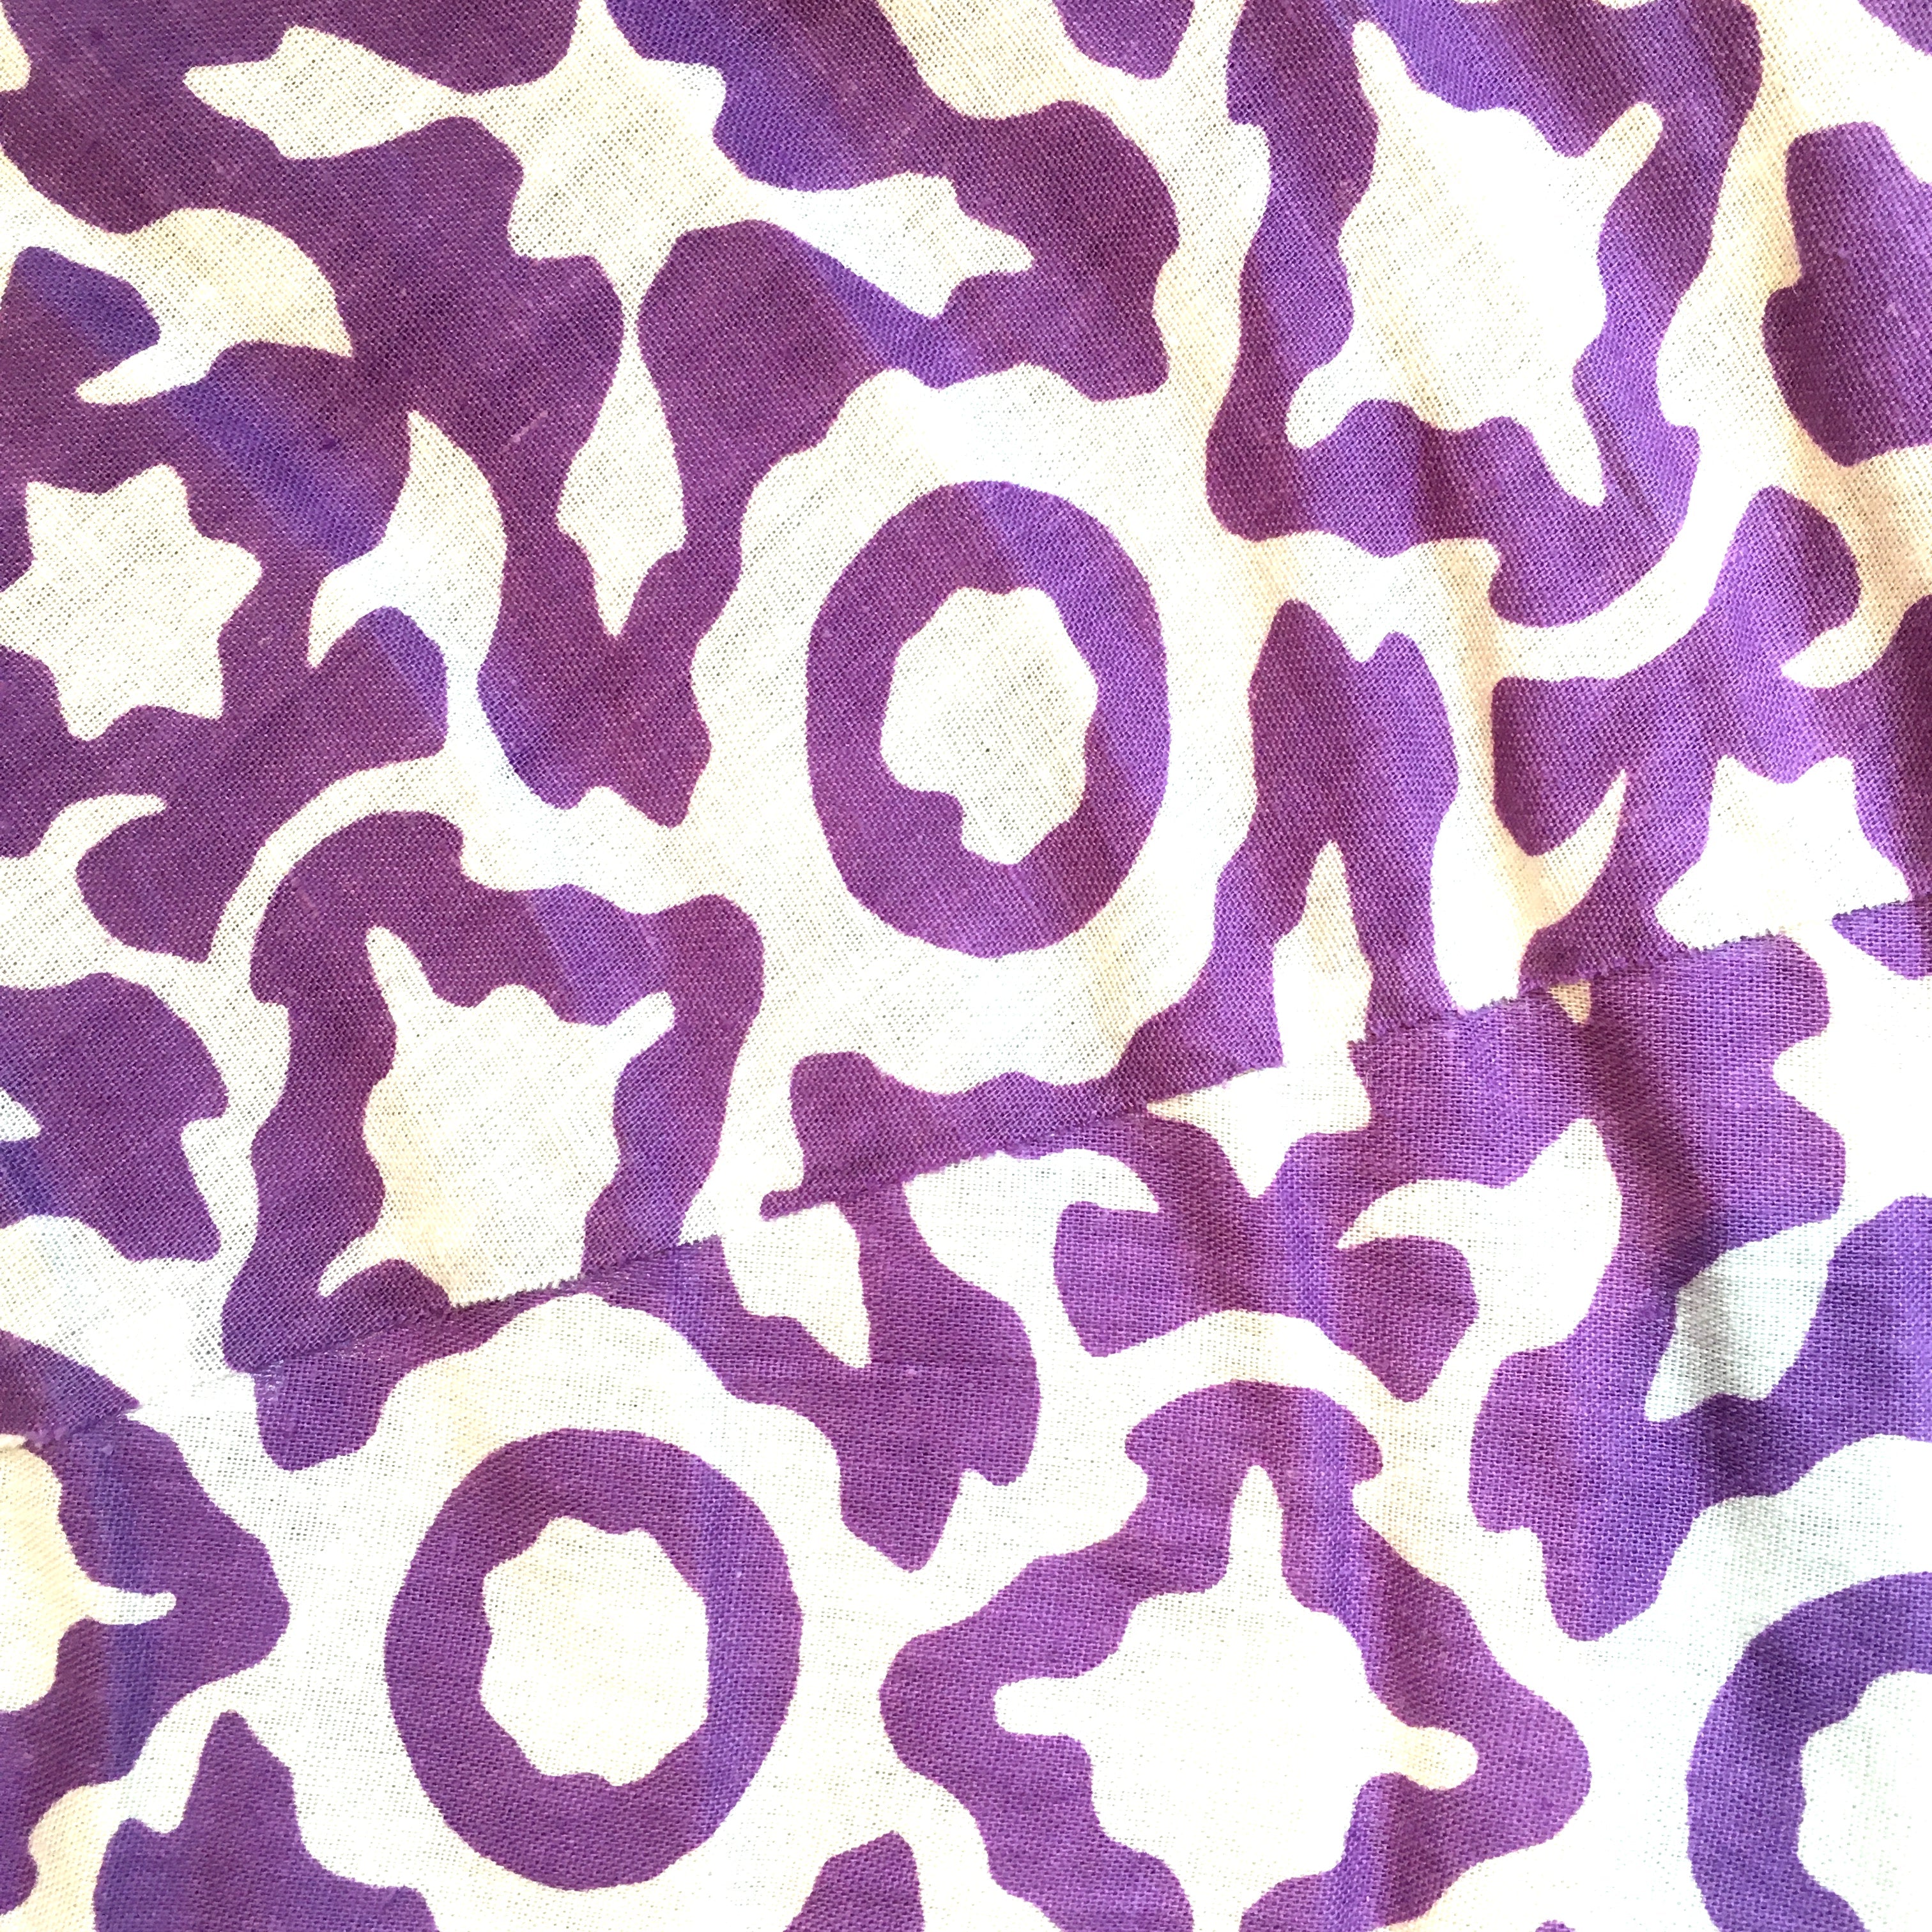 Large 80cm Cream & Bright Purple Eva Cotton Pendant Lampshade